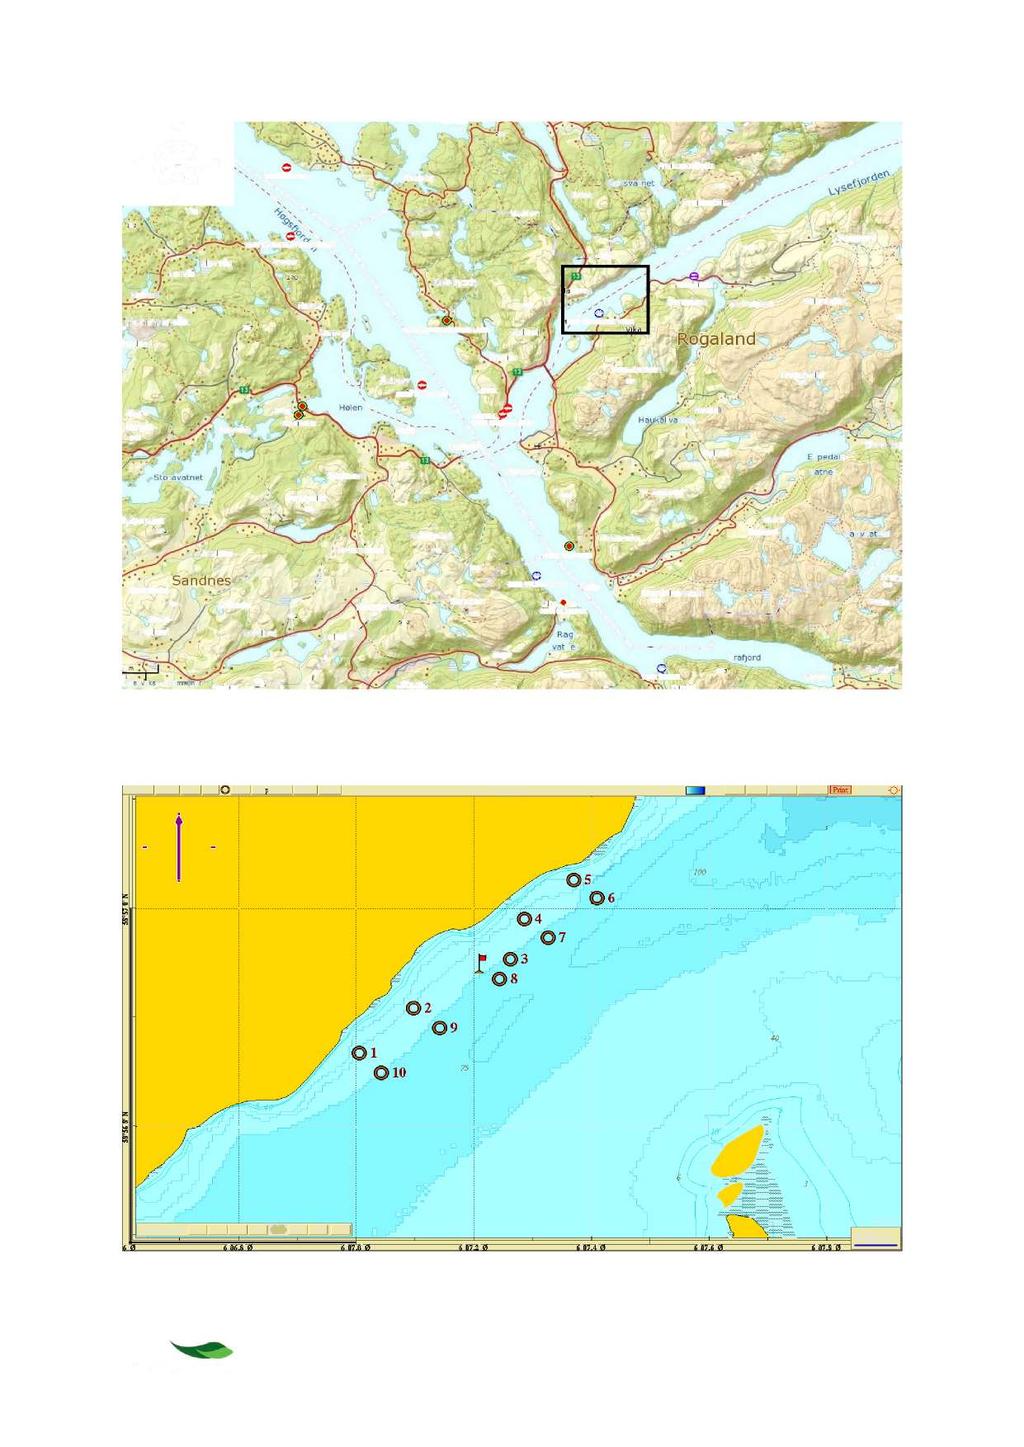 Figur 2-1. Oversiktskart over deler av Høgsfjorden og Lysefjorden, samt Frafjor d, Rogaland.